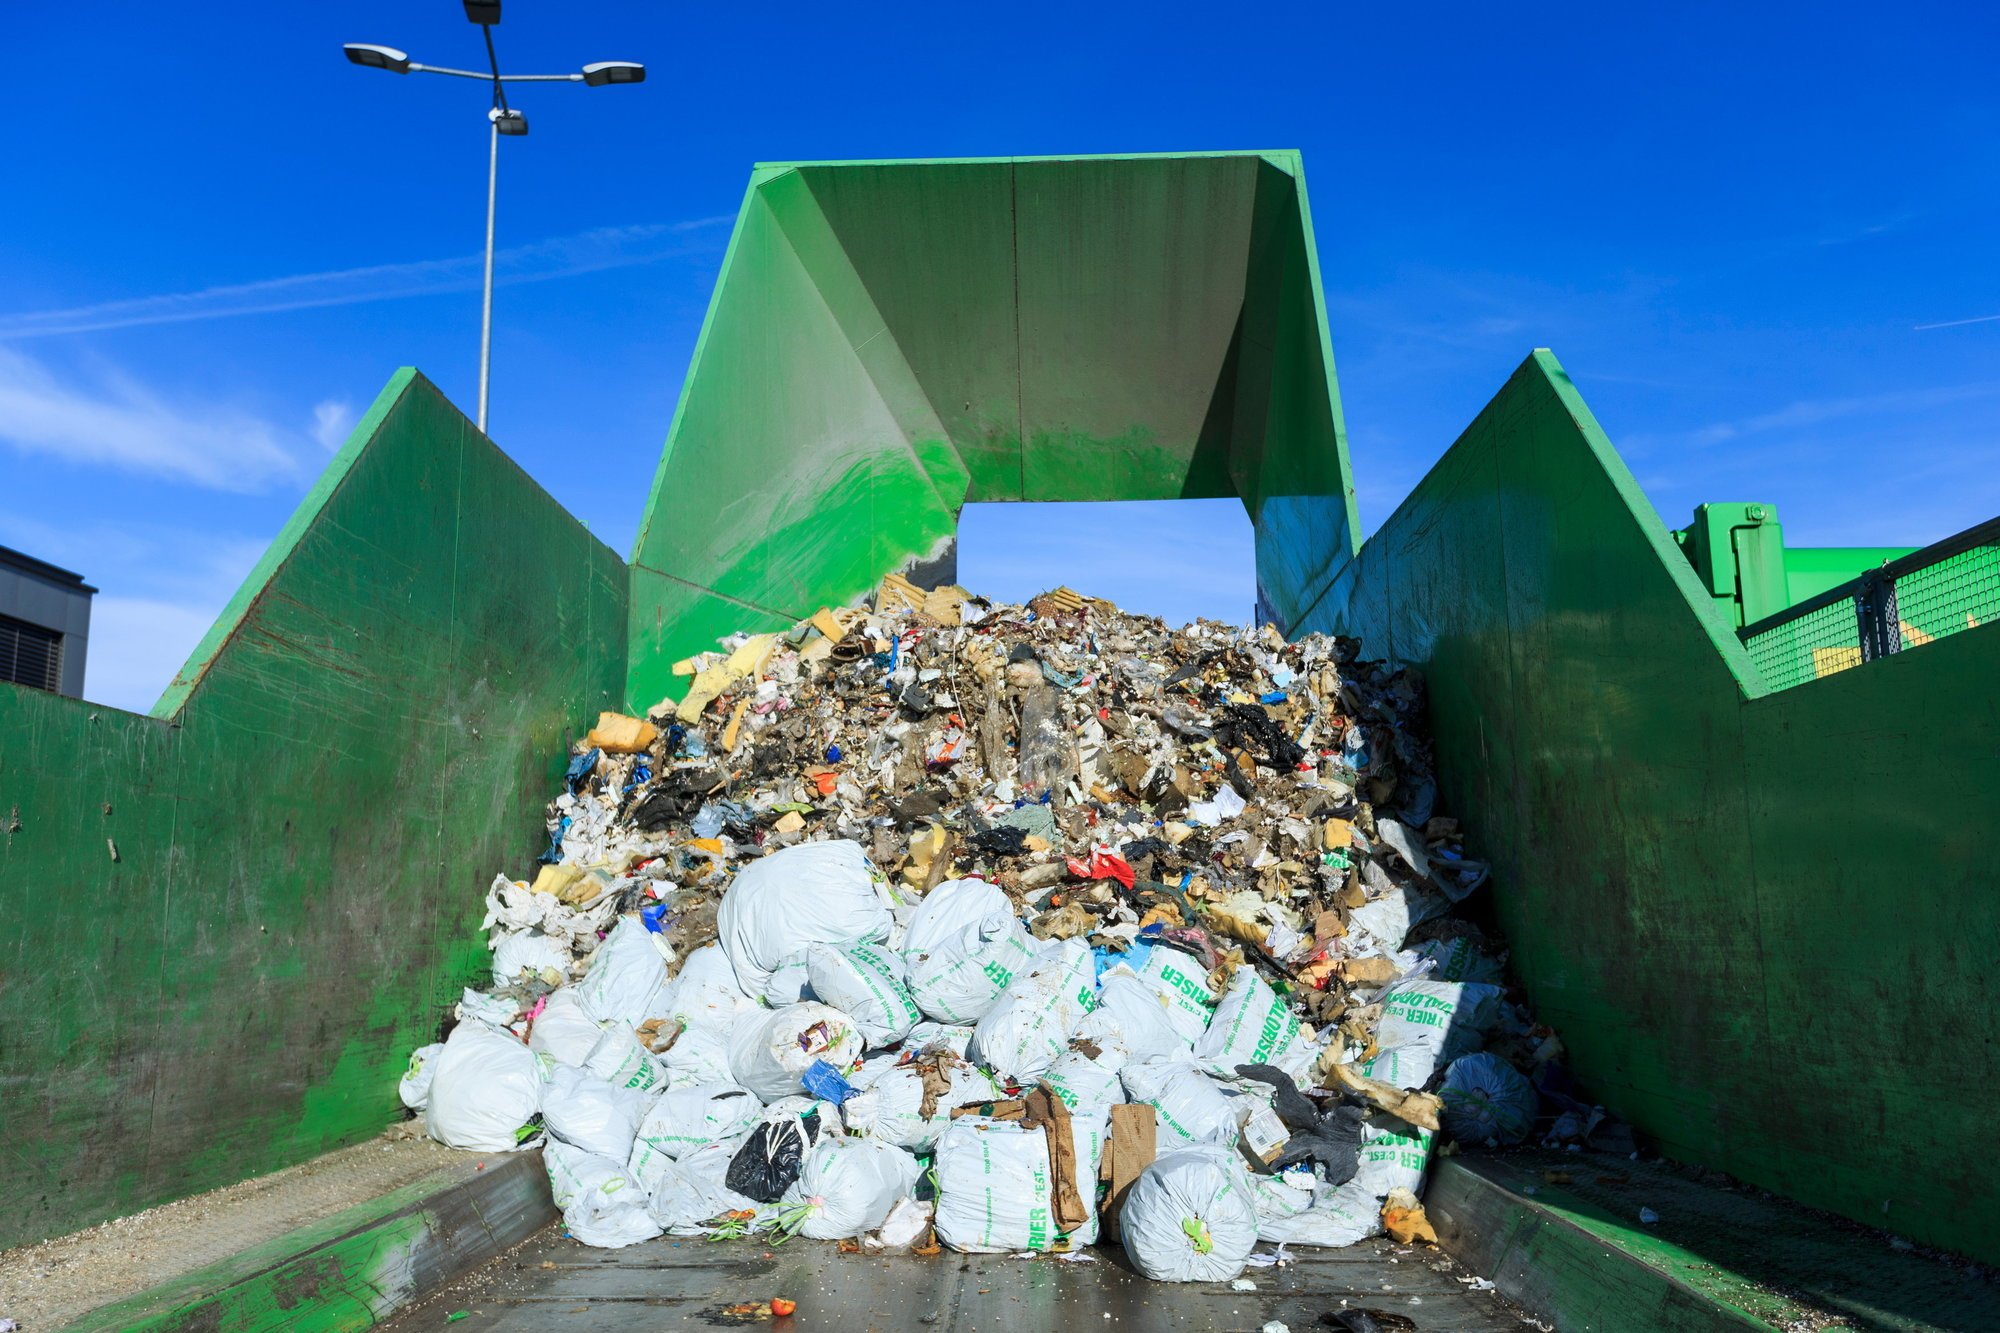 L’affaire concerne un appel d’offres pour le ramassage et le transport des ordures ménagères et autres déchets en Valais. (Image d’illustration)